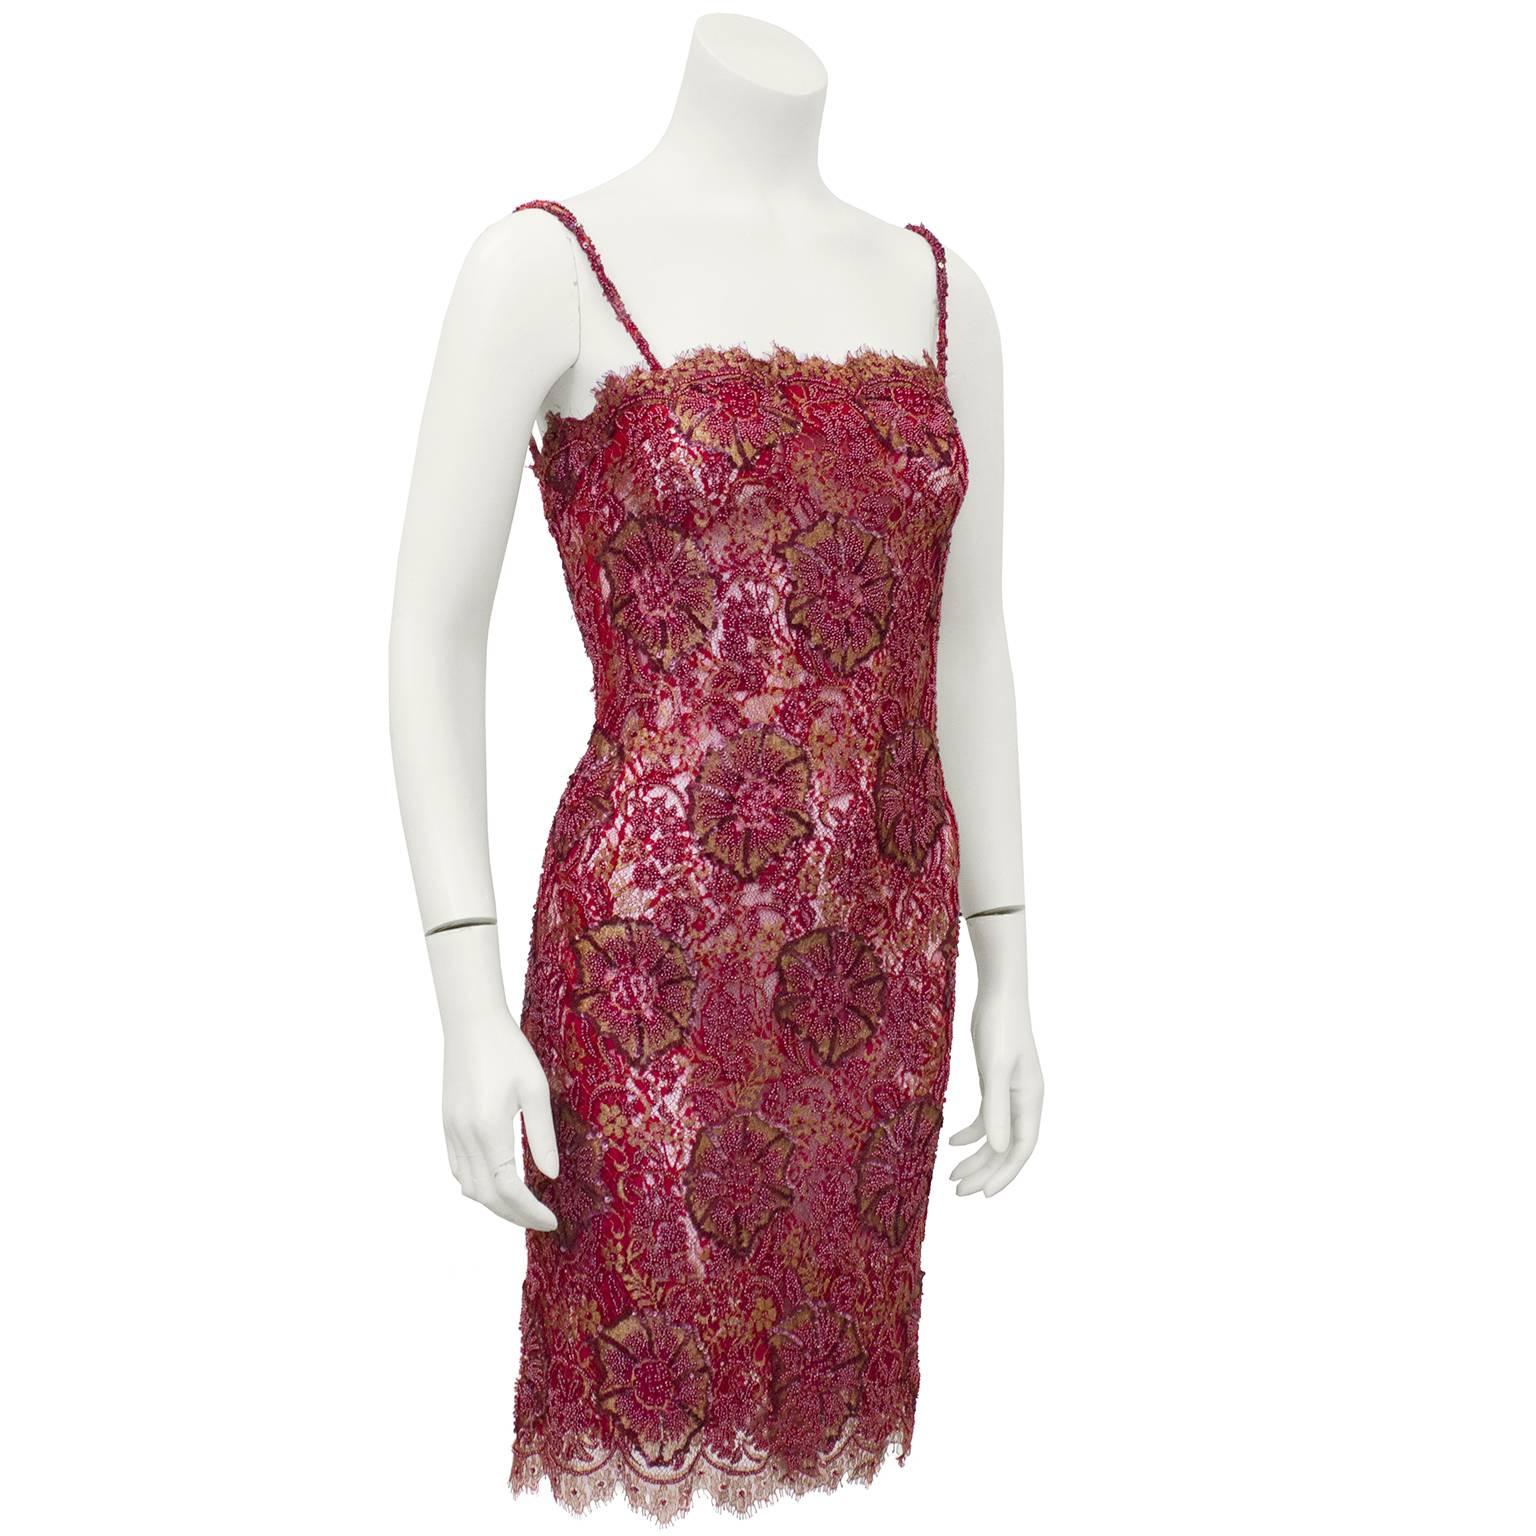 Exquise robe de cocktail anonyme des années 1960 en dentelle rouge canneberge et or, avec un exquis motif floral en dentelle, perlé à la main et brodé de fils métalliques dorés. Grâce à une incroyable attention portée aux détails, les plus grandes